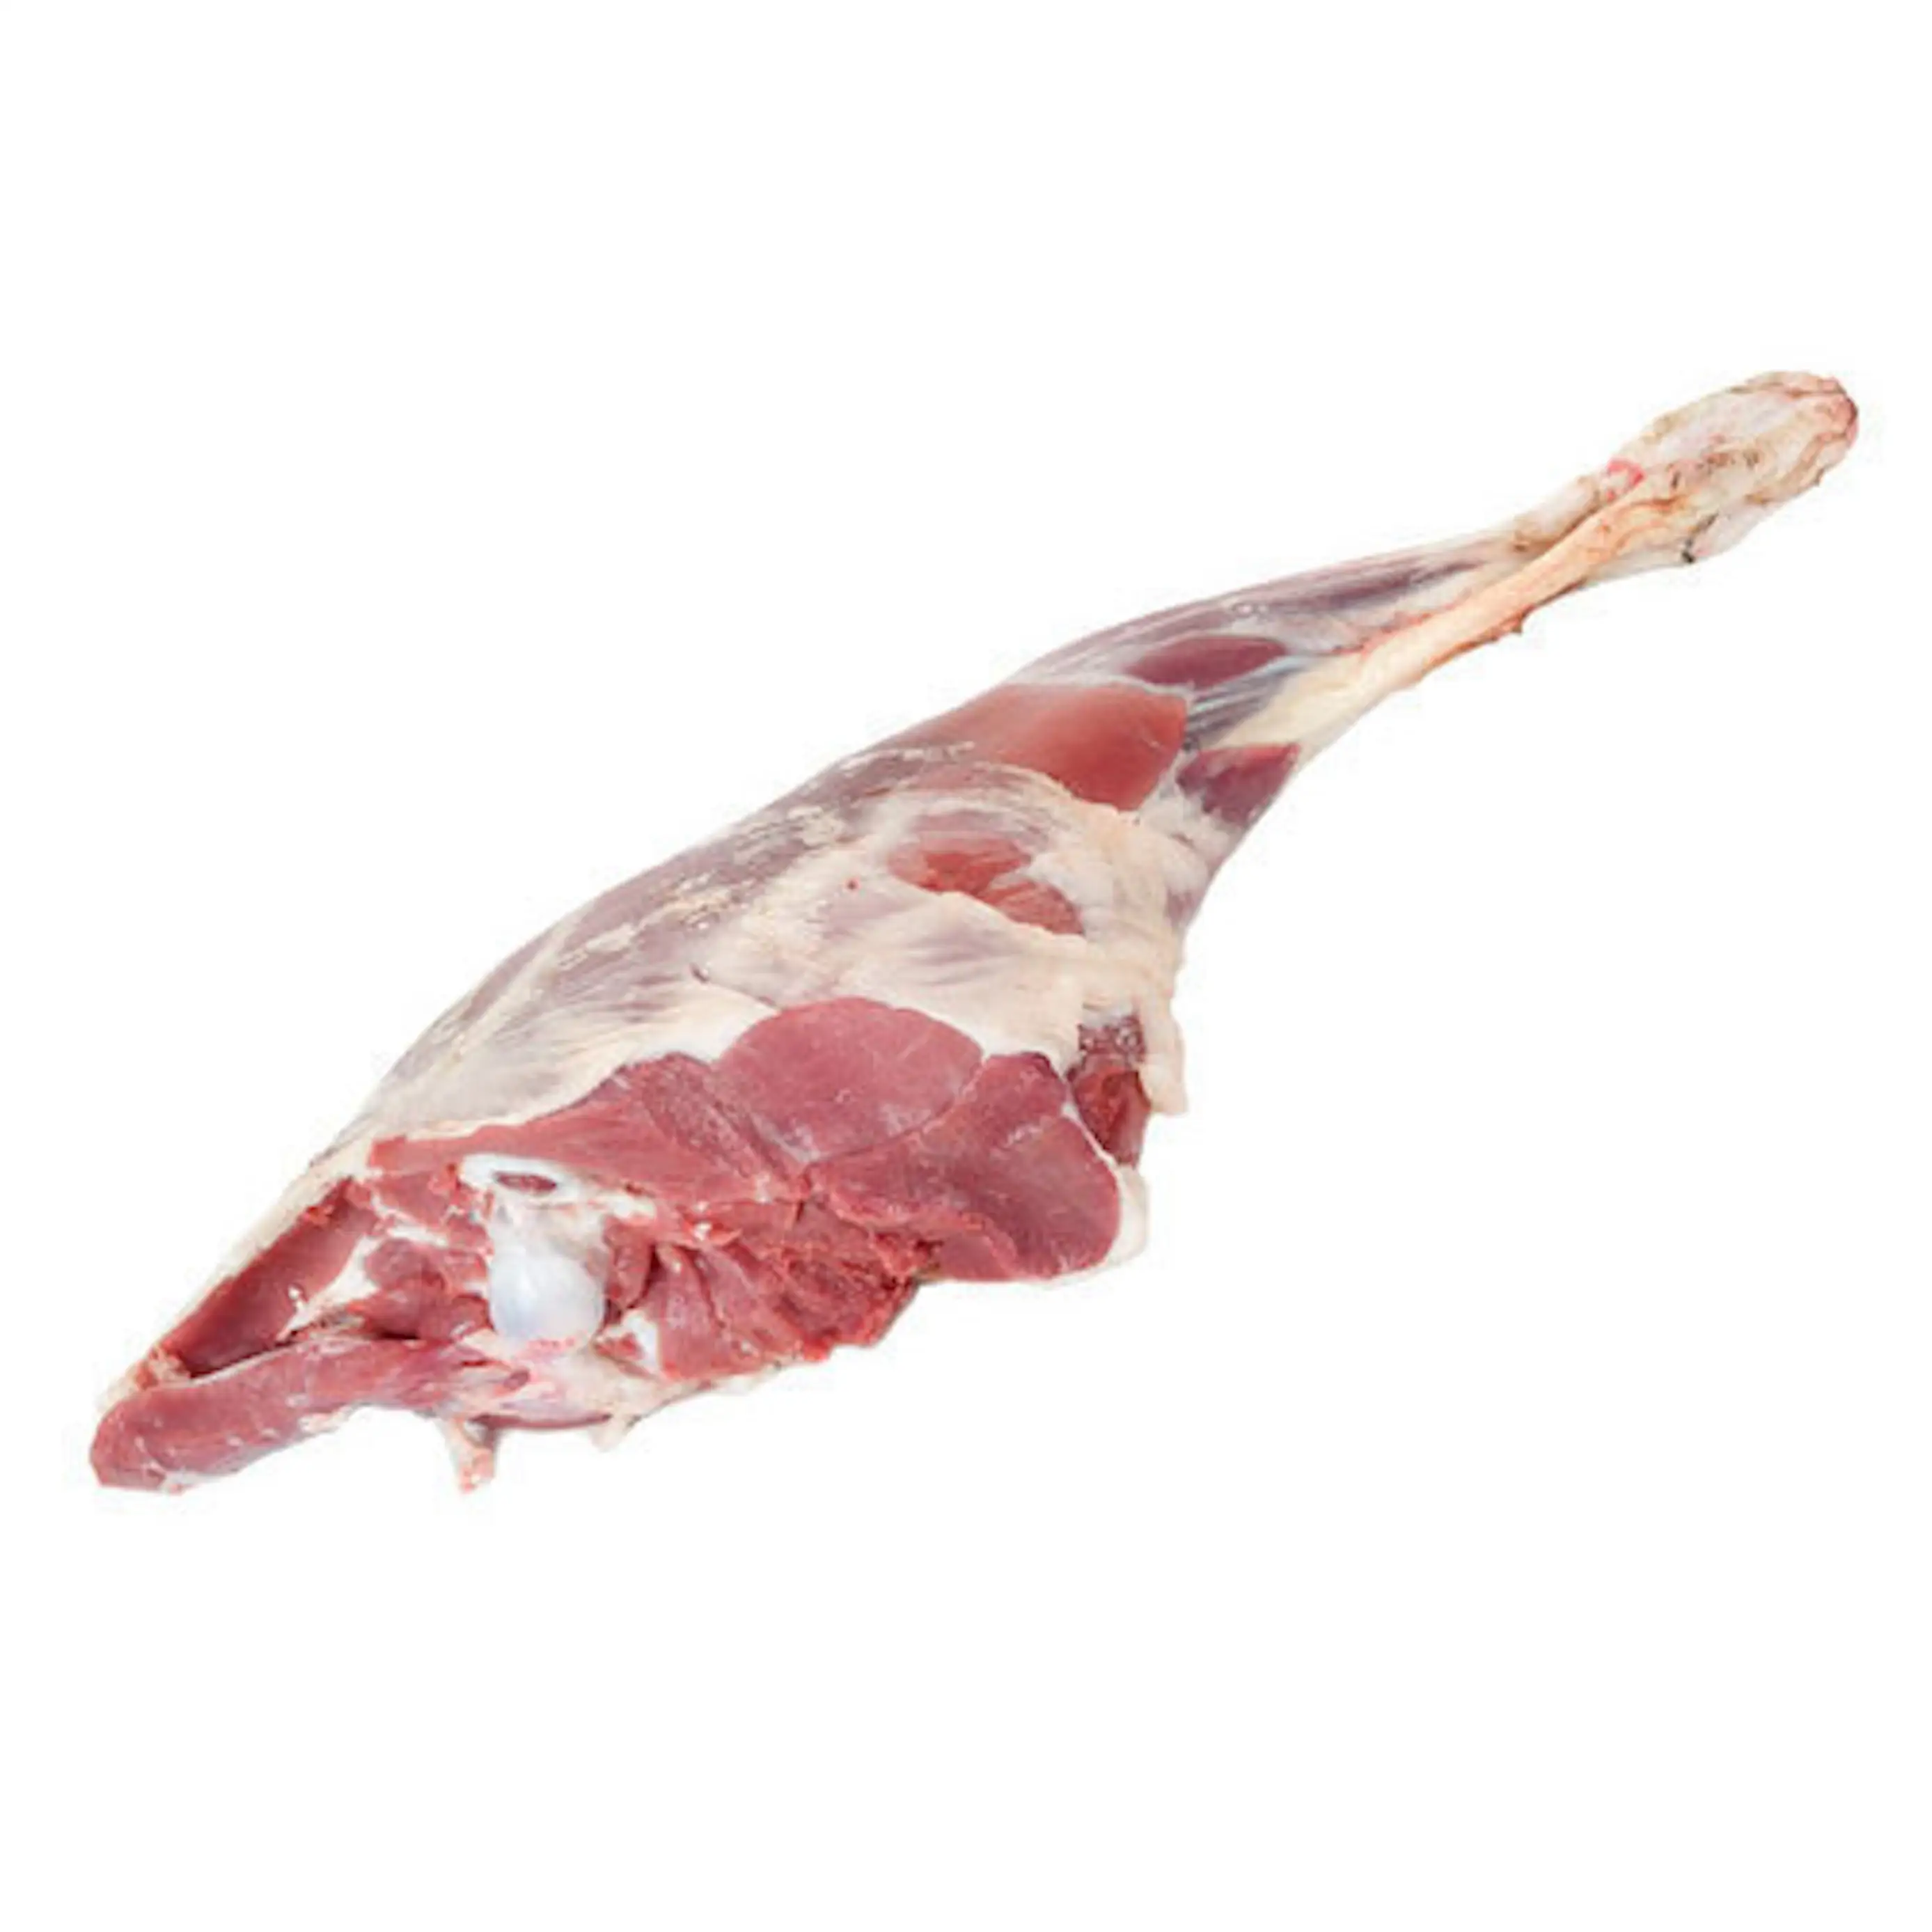 निर्यात के लिए उच्च गुणवत्ता वाला जमे हुए हलाल बकरी का मांस / ताजा हलाल बकरी का मांस